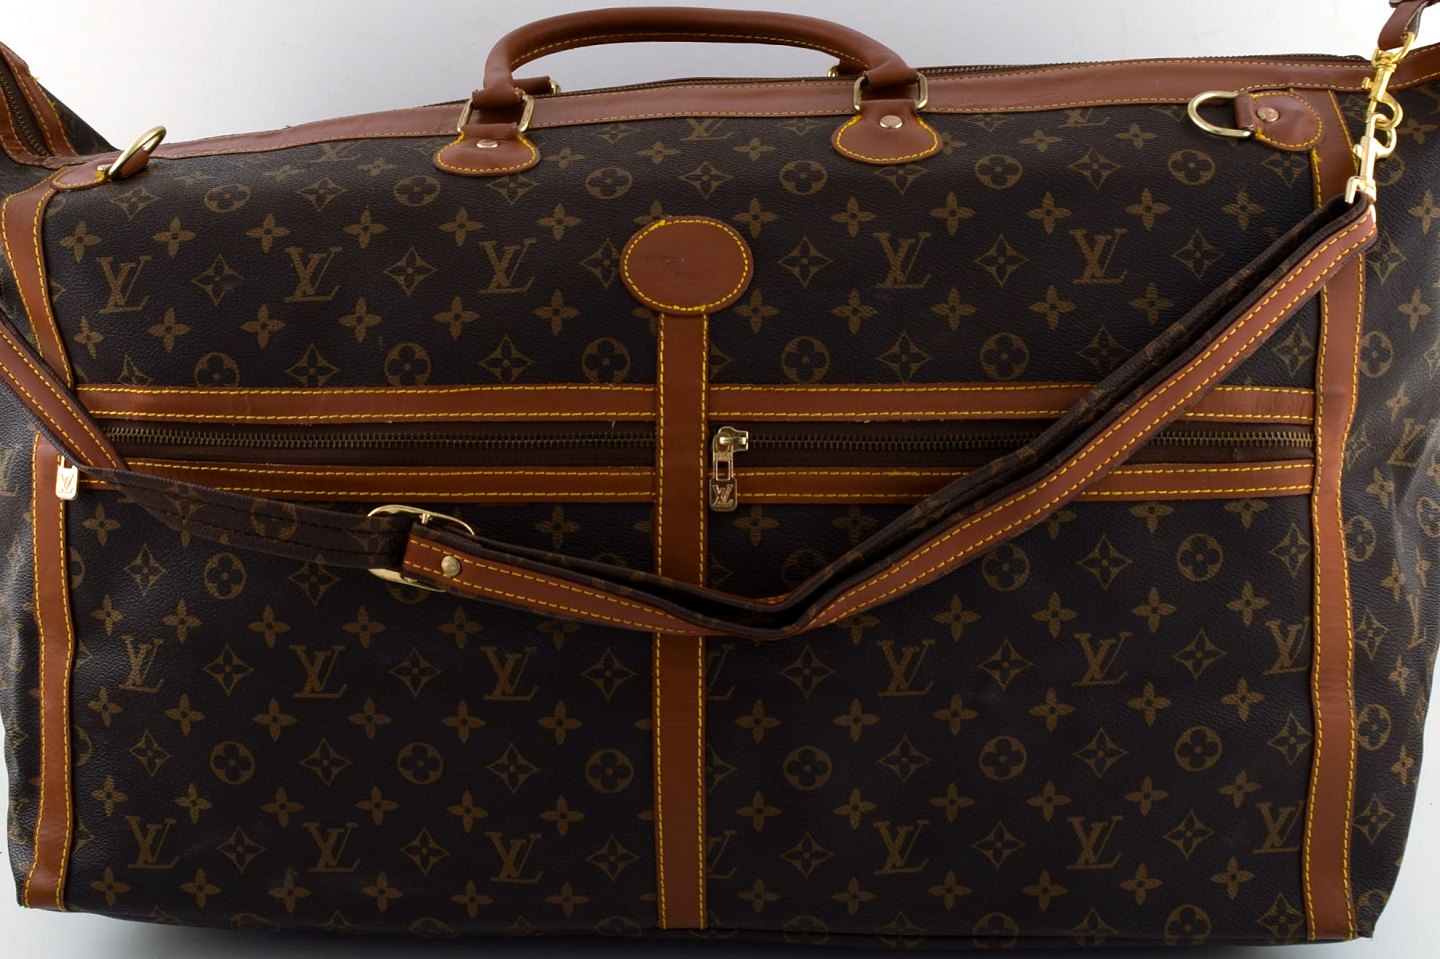 WorldAntique.net - Louis Vuitton: Large vintage travel bag monogram canvas